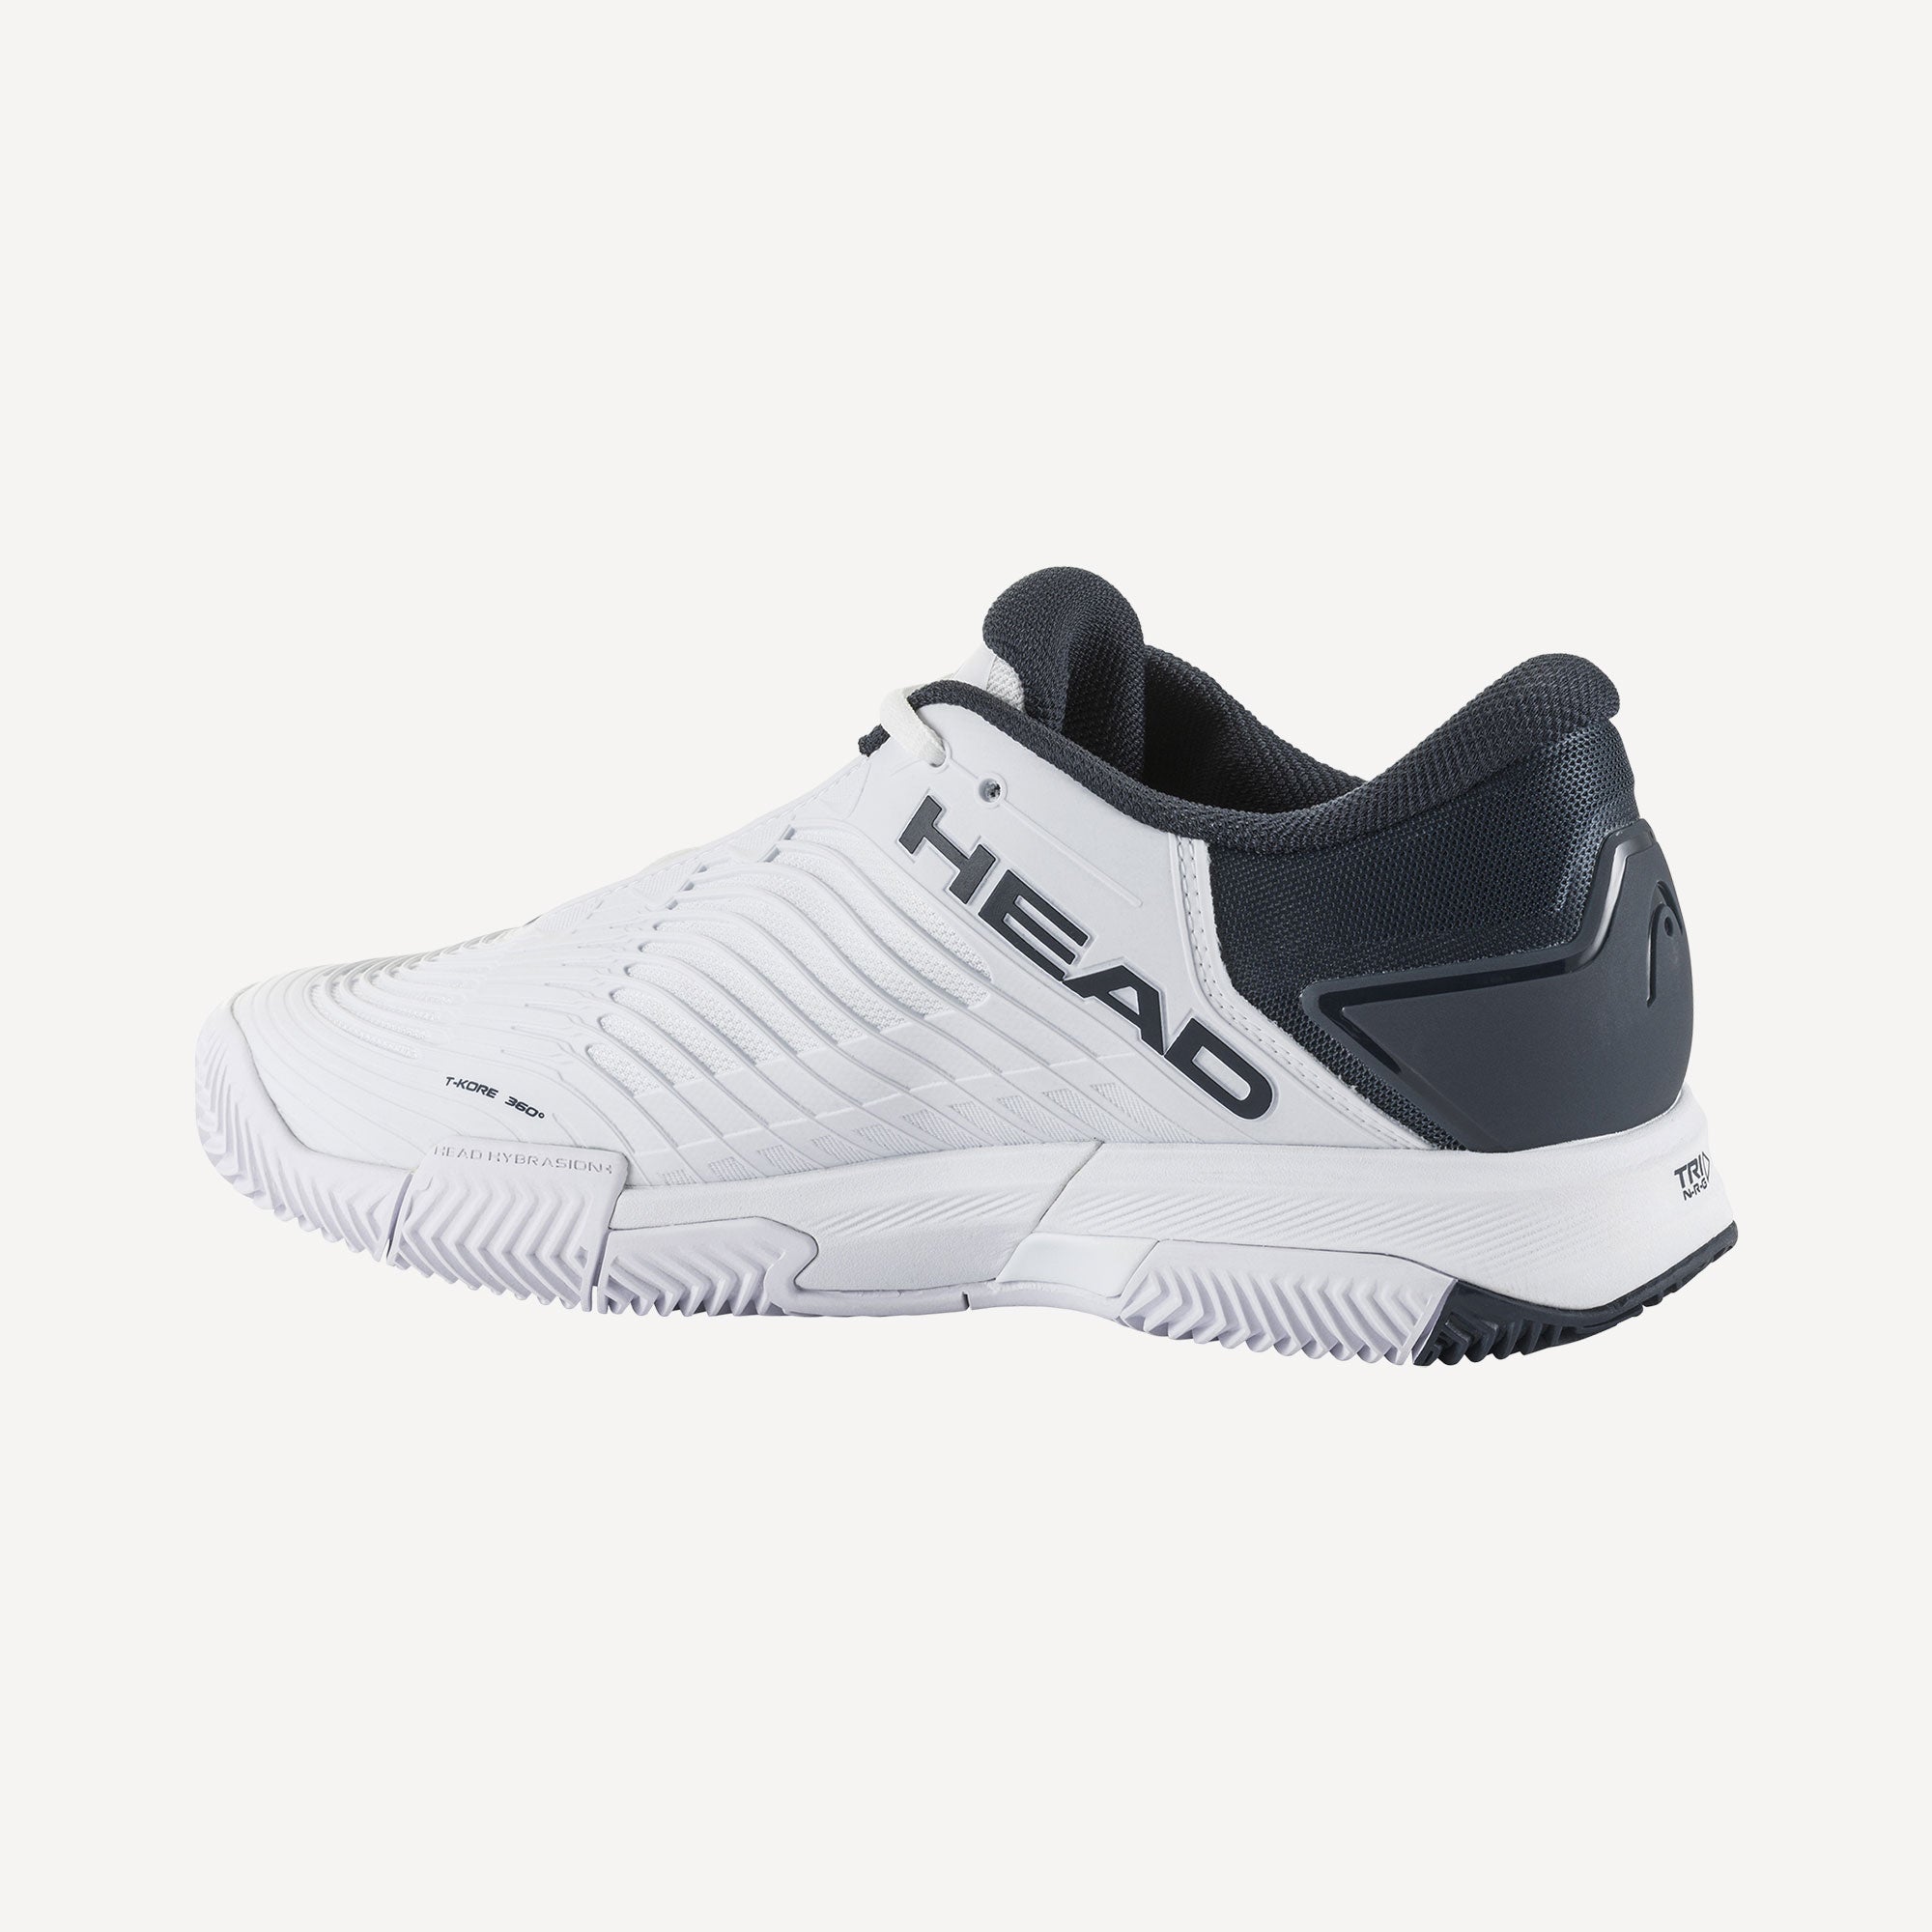 HEAD Revolt Pro 4.5 Men's Clay Court Tennis Shoes - White (3)